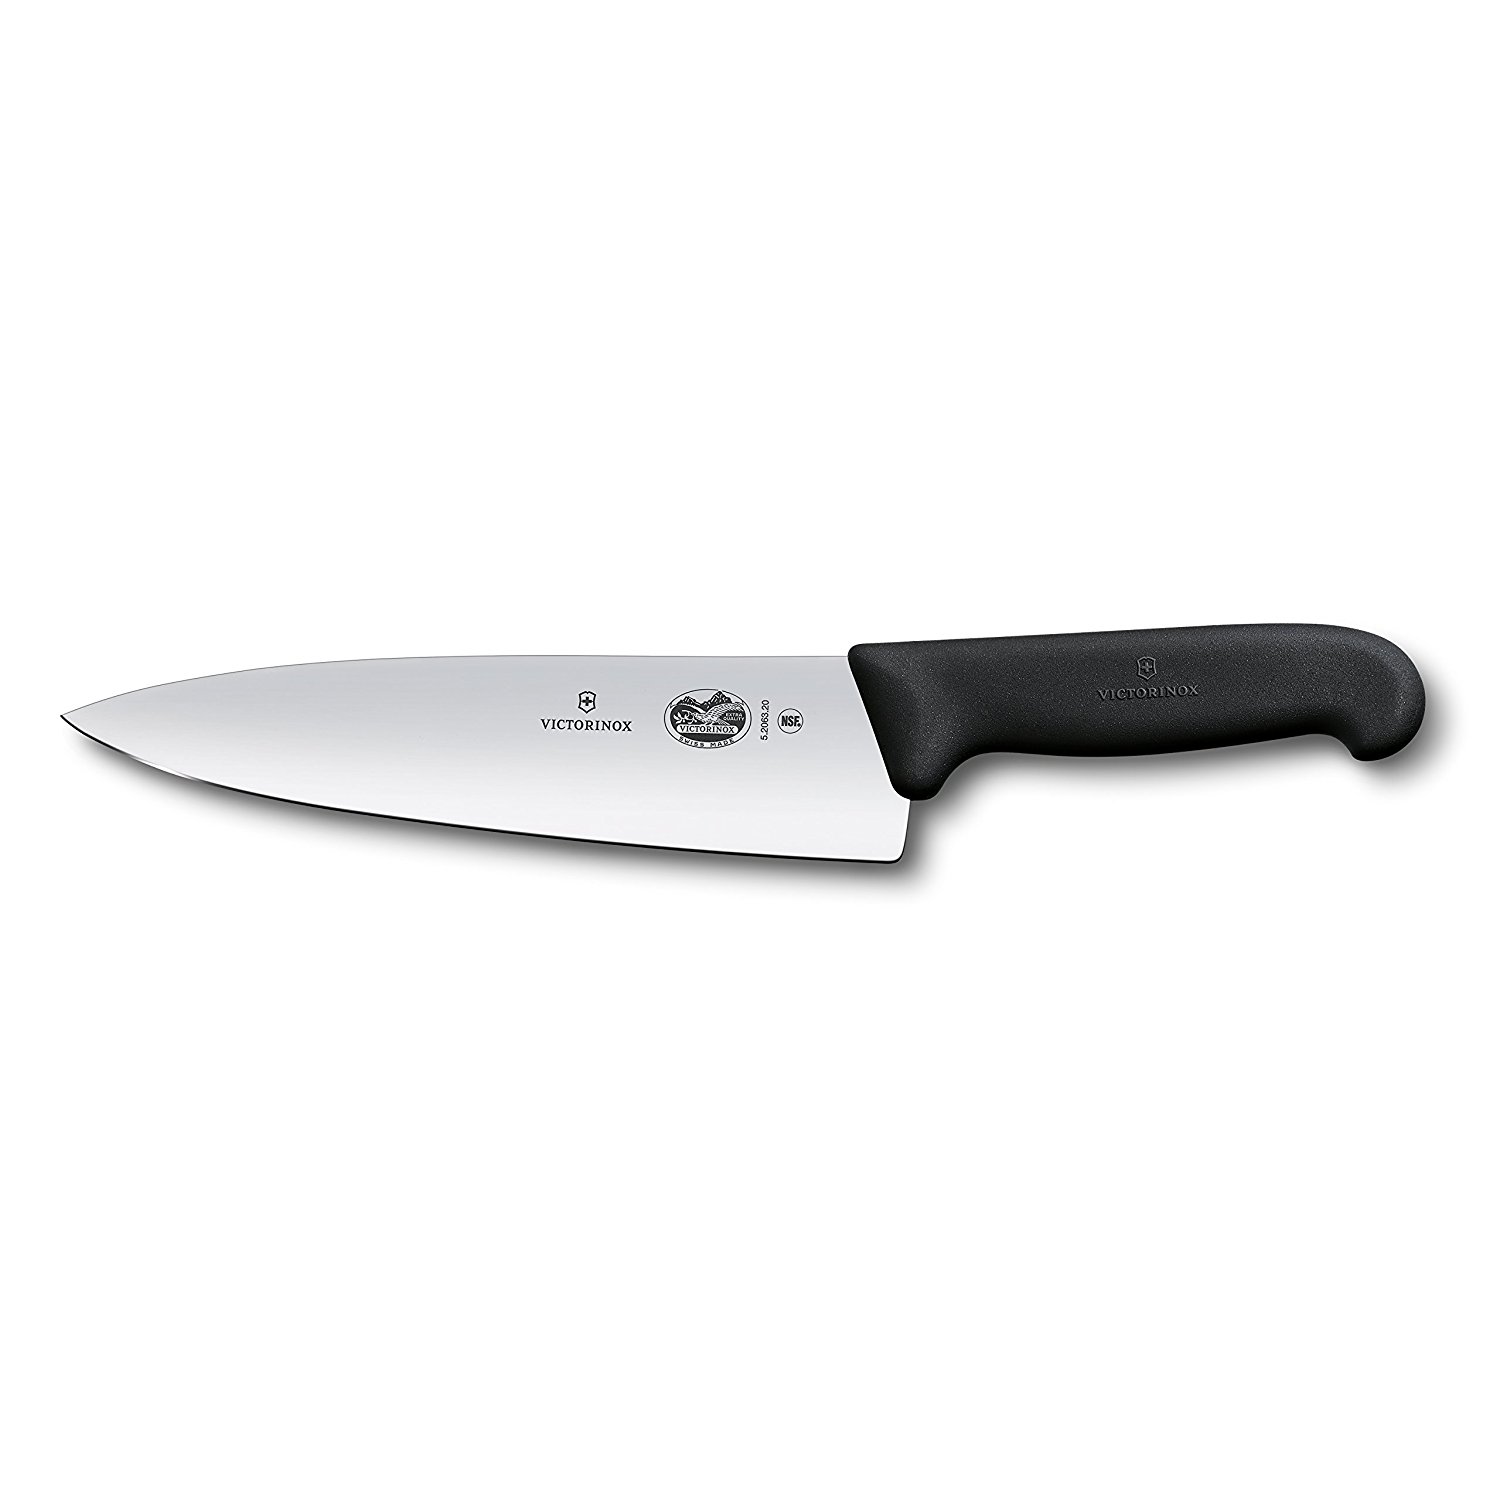 Amazon.com: Victorinox Fibrox Pro Chef's Knife, 8-Inch Chef's: Chefs ...